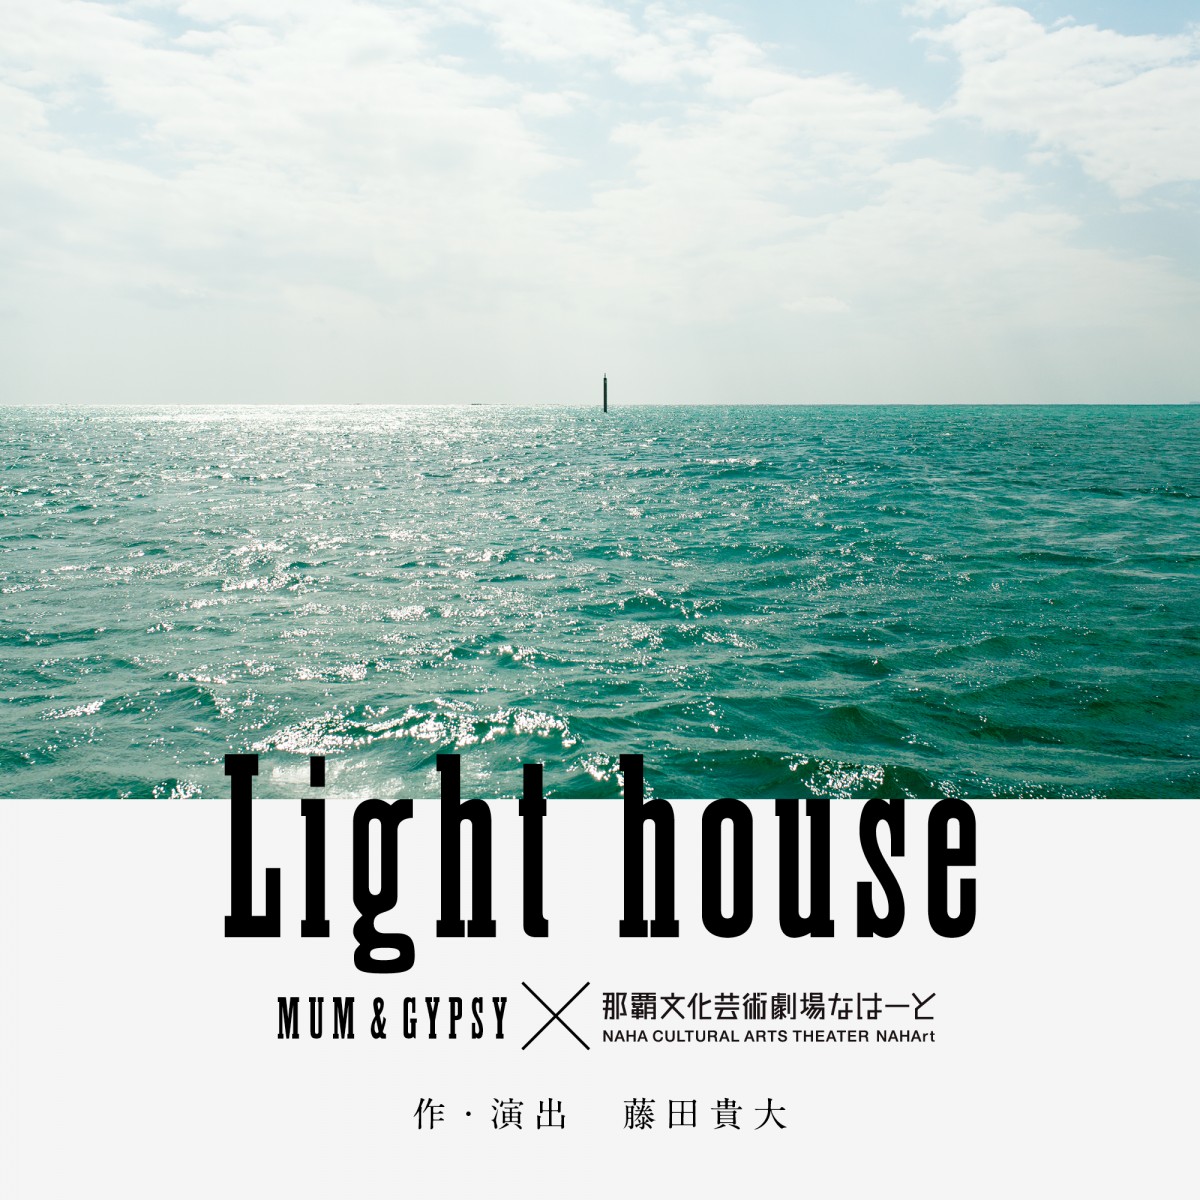 マームとジプシー新作演劇公演「Light house」